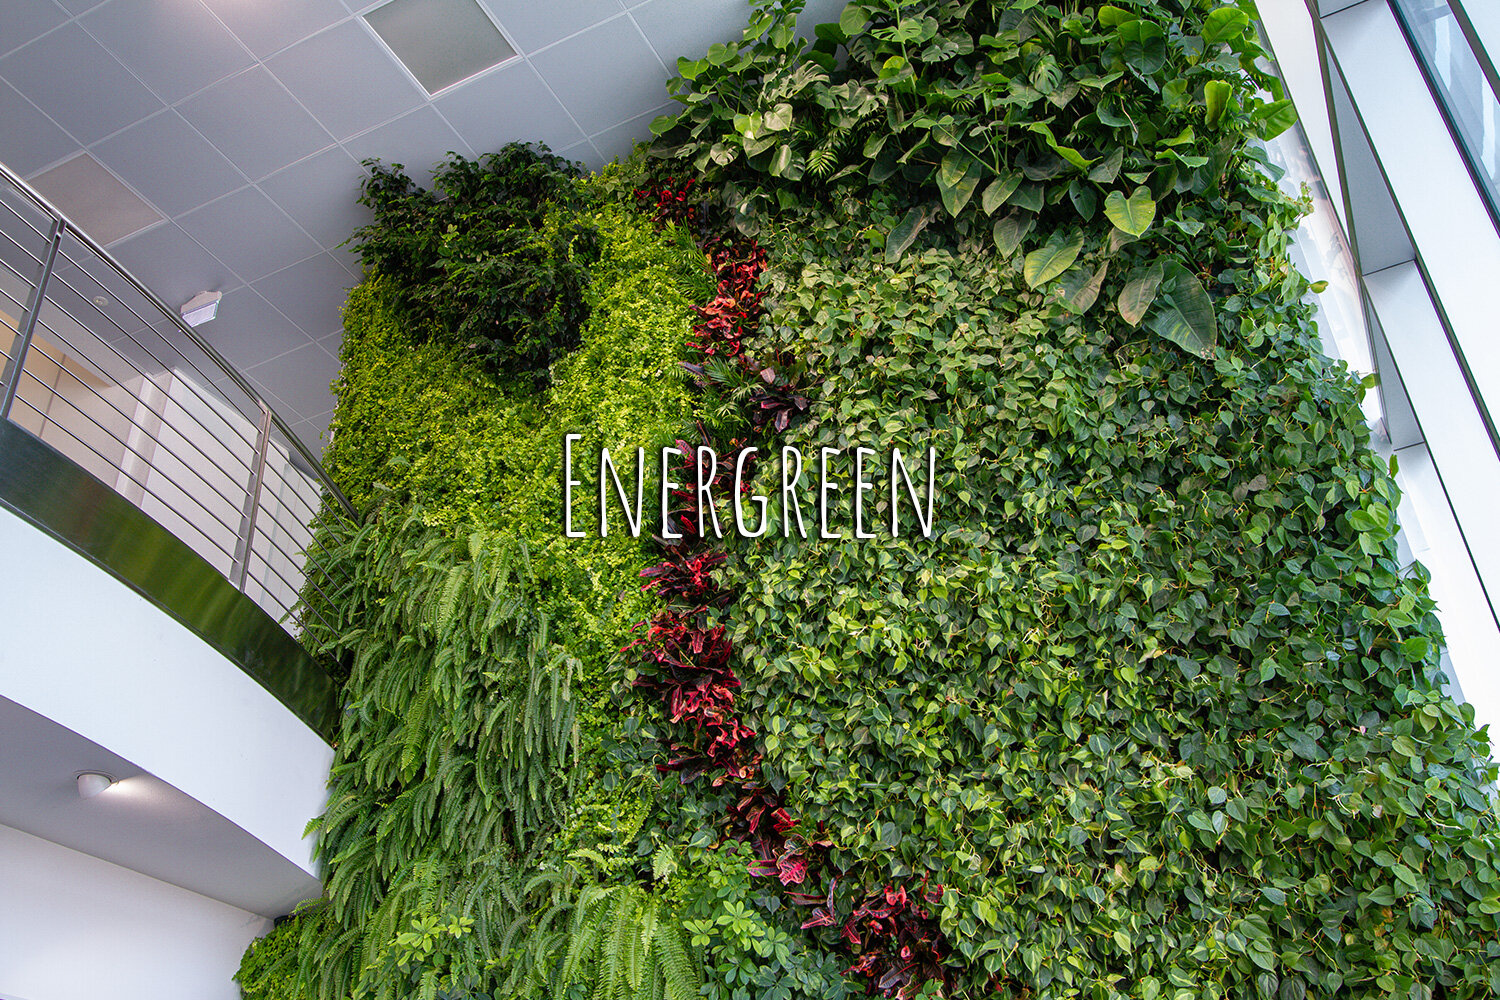 Vertical garden, Green wall, Inside, Non-residential, Energreen, Cagnano, Vicenza